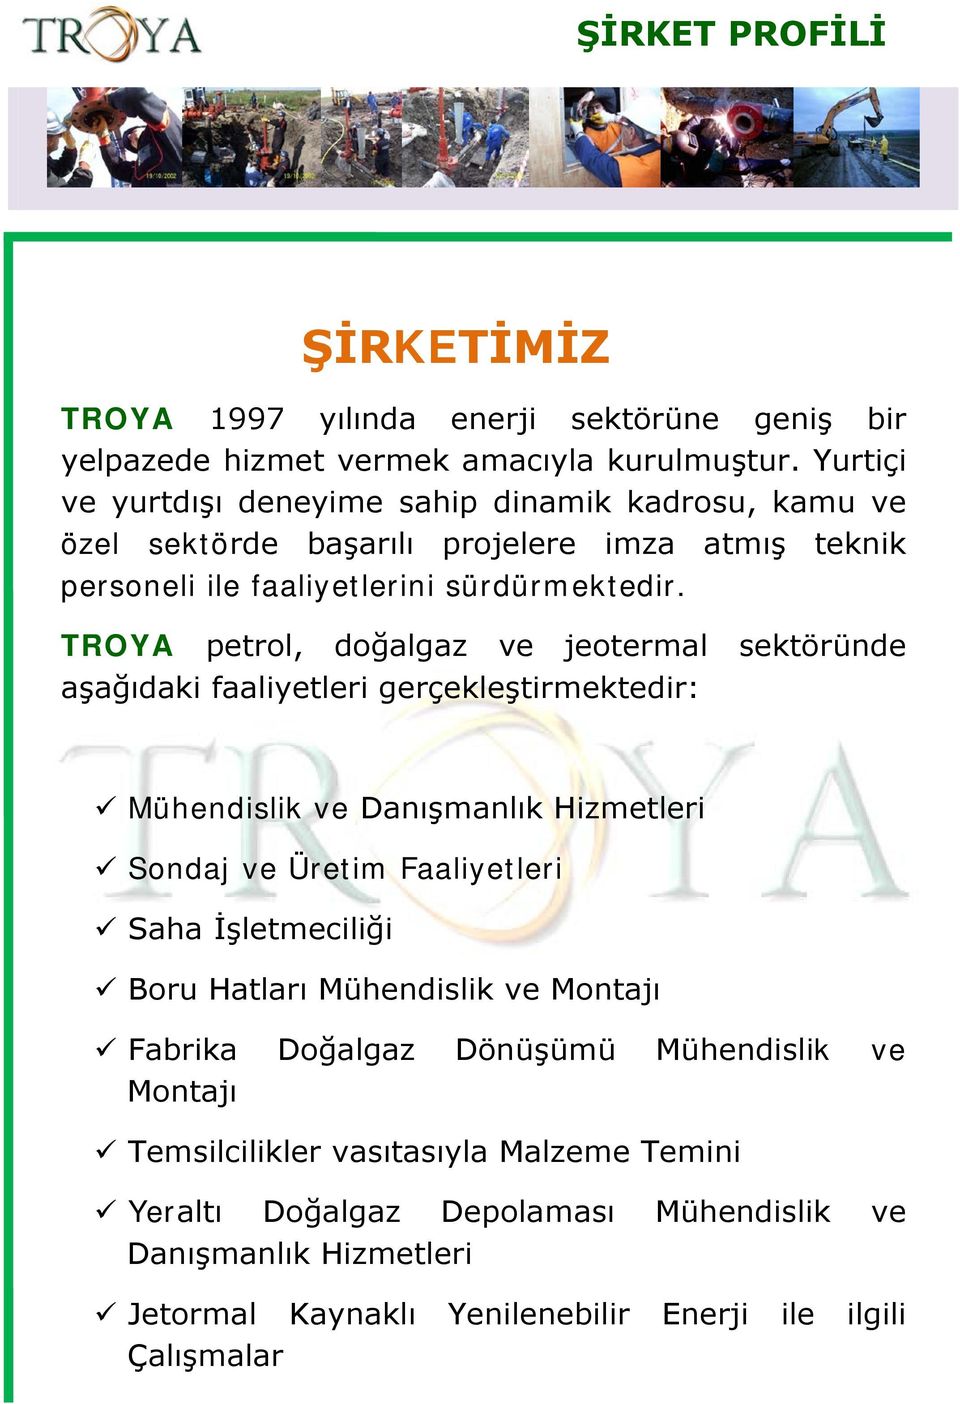 TROYA petrol, doğalgaz ve jeotermal sektöründe aşağıdaki faaliyetleri gerçekleştirmektedir: Mühendislik ve Danışmanlık Hizmetleri Sondaj ve Üretim Faaliyetleri Saha